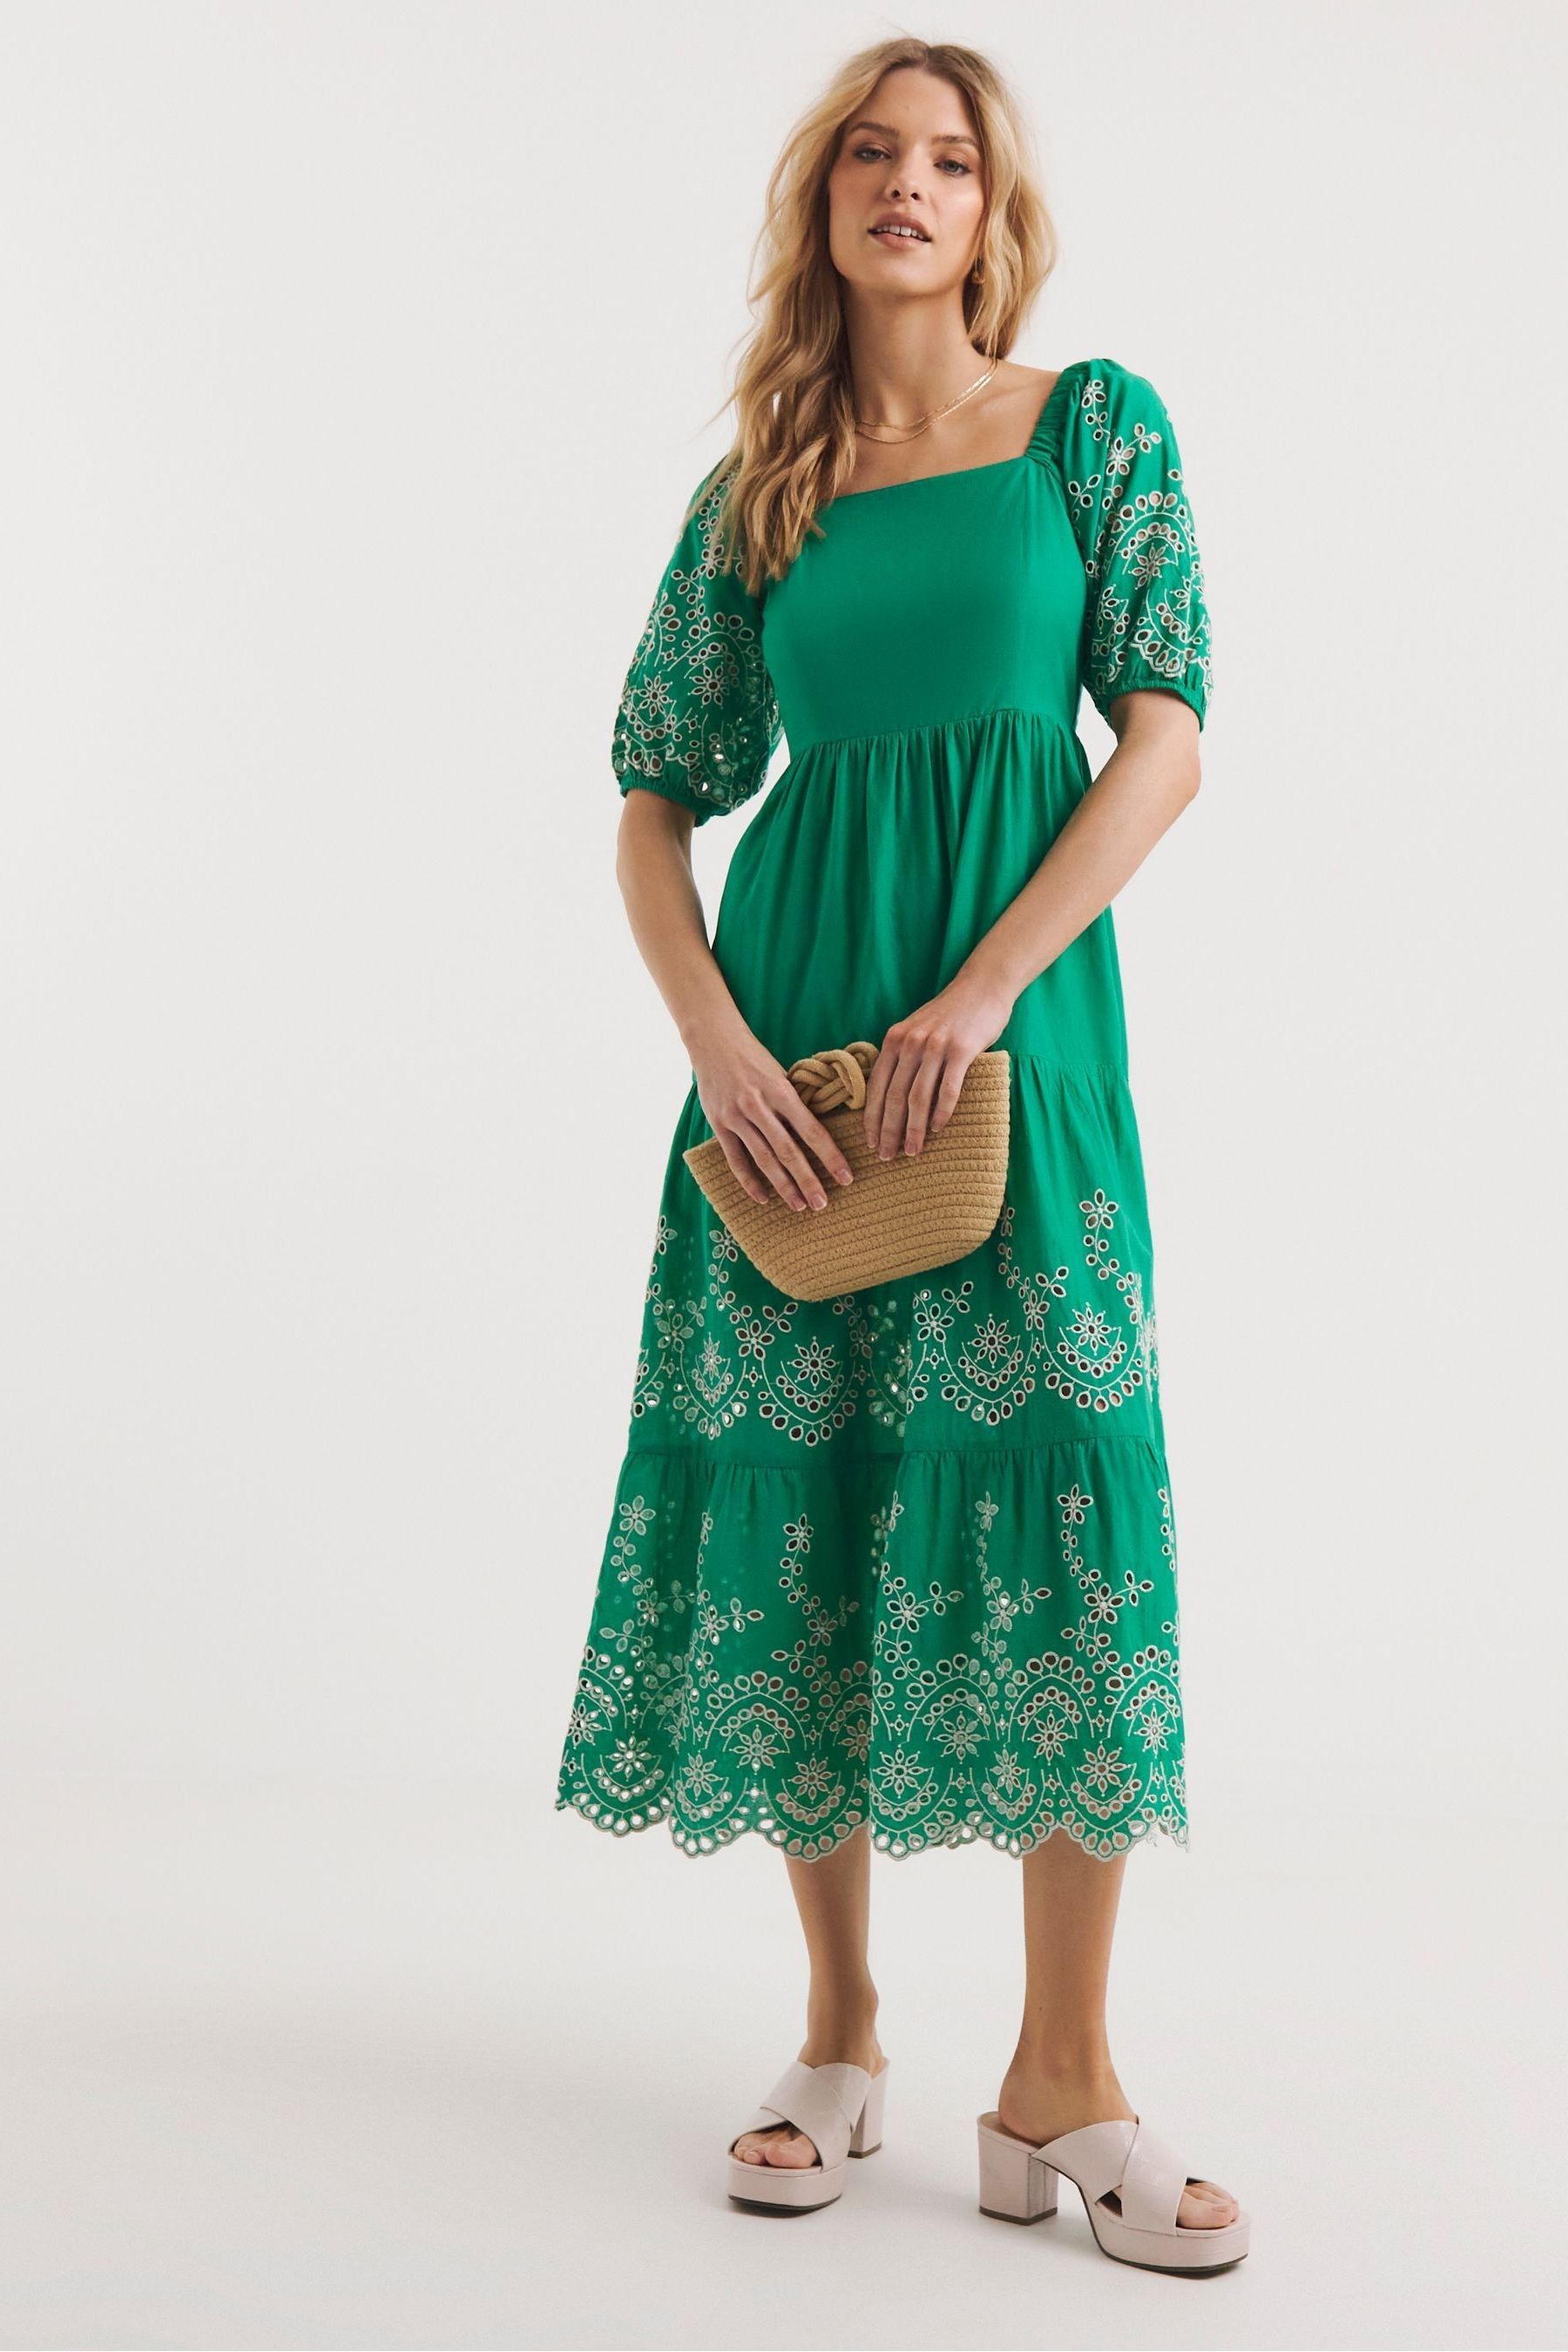 Зеленое многослойное платье с объемными рукавами и английской вышивкой Jd Williams JD Williams, зеленый